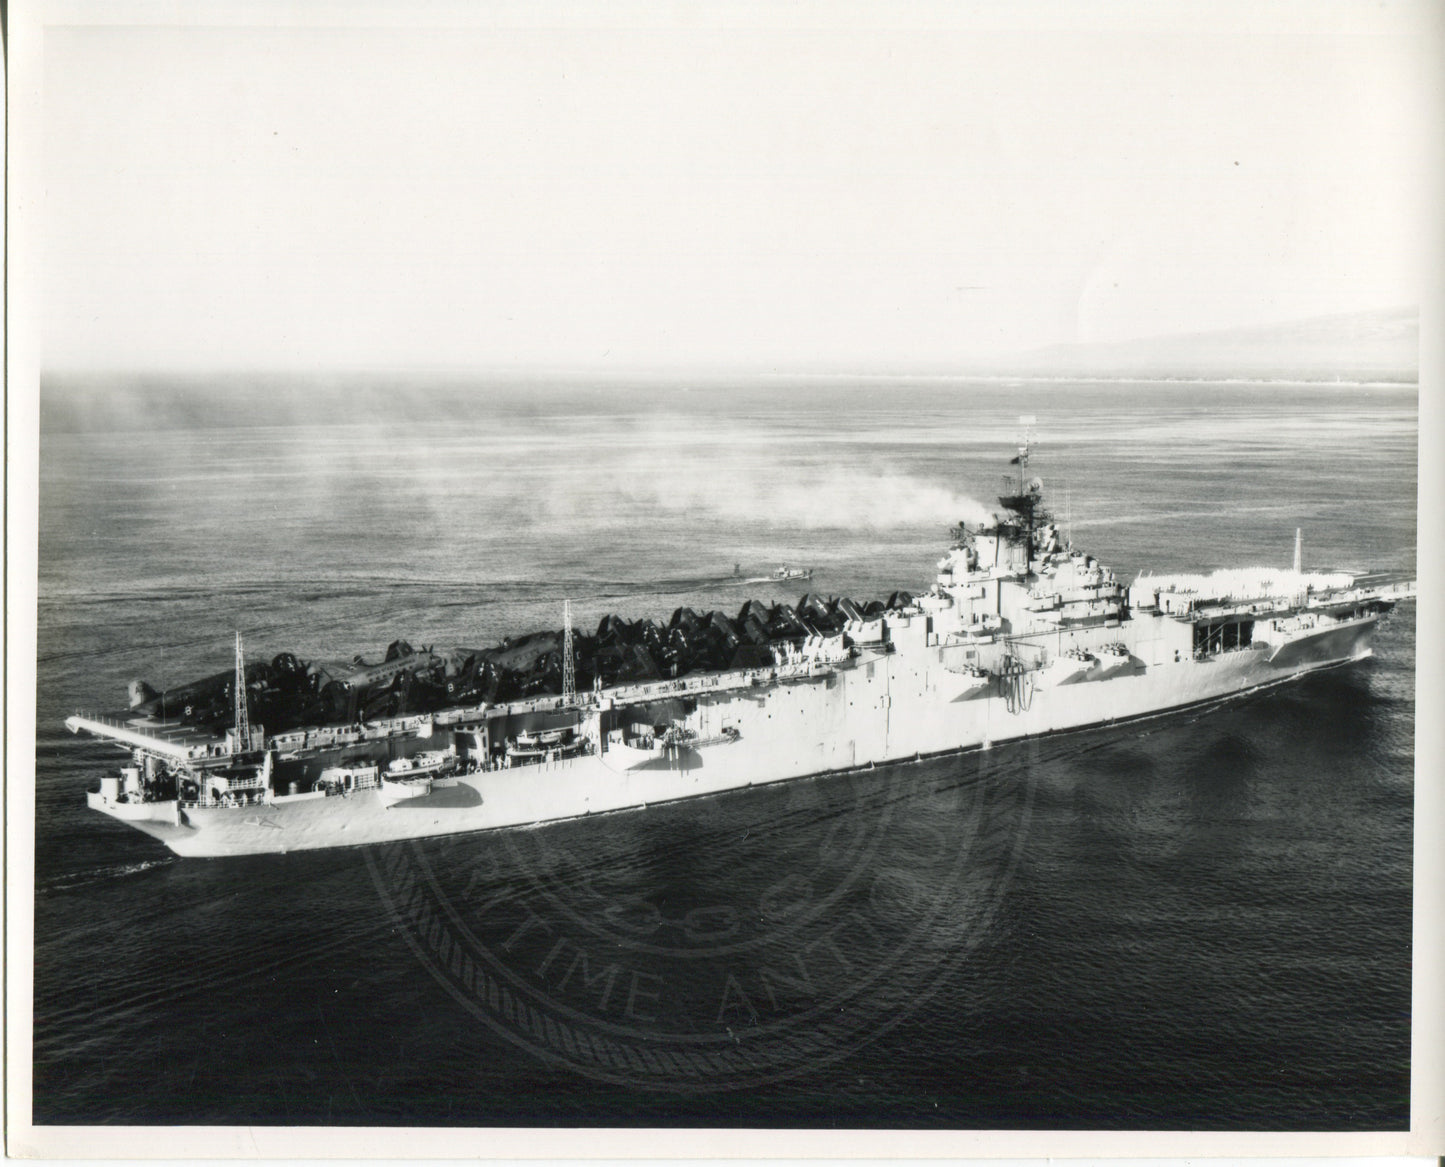 USS Bon Homme Richard (CV-31) I